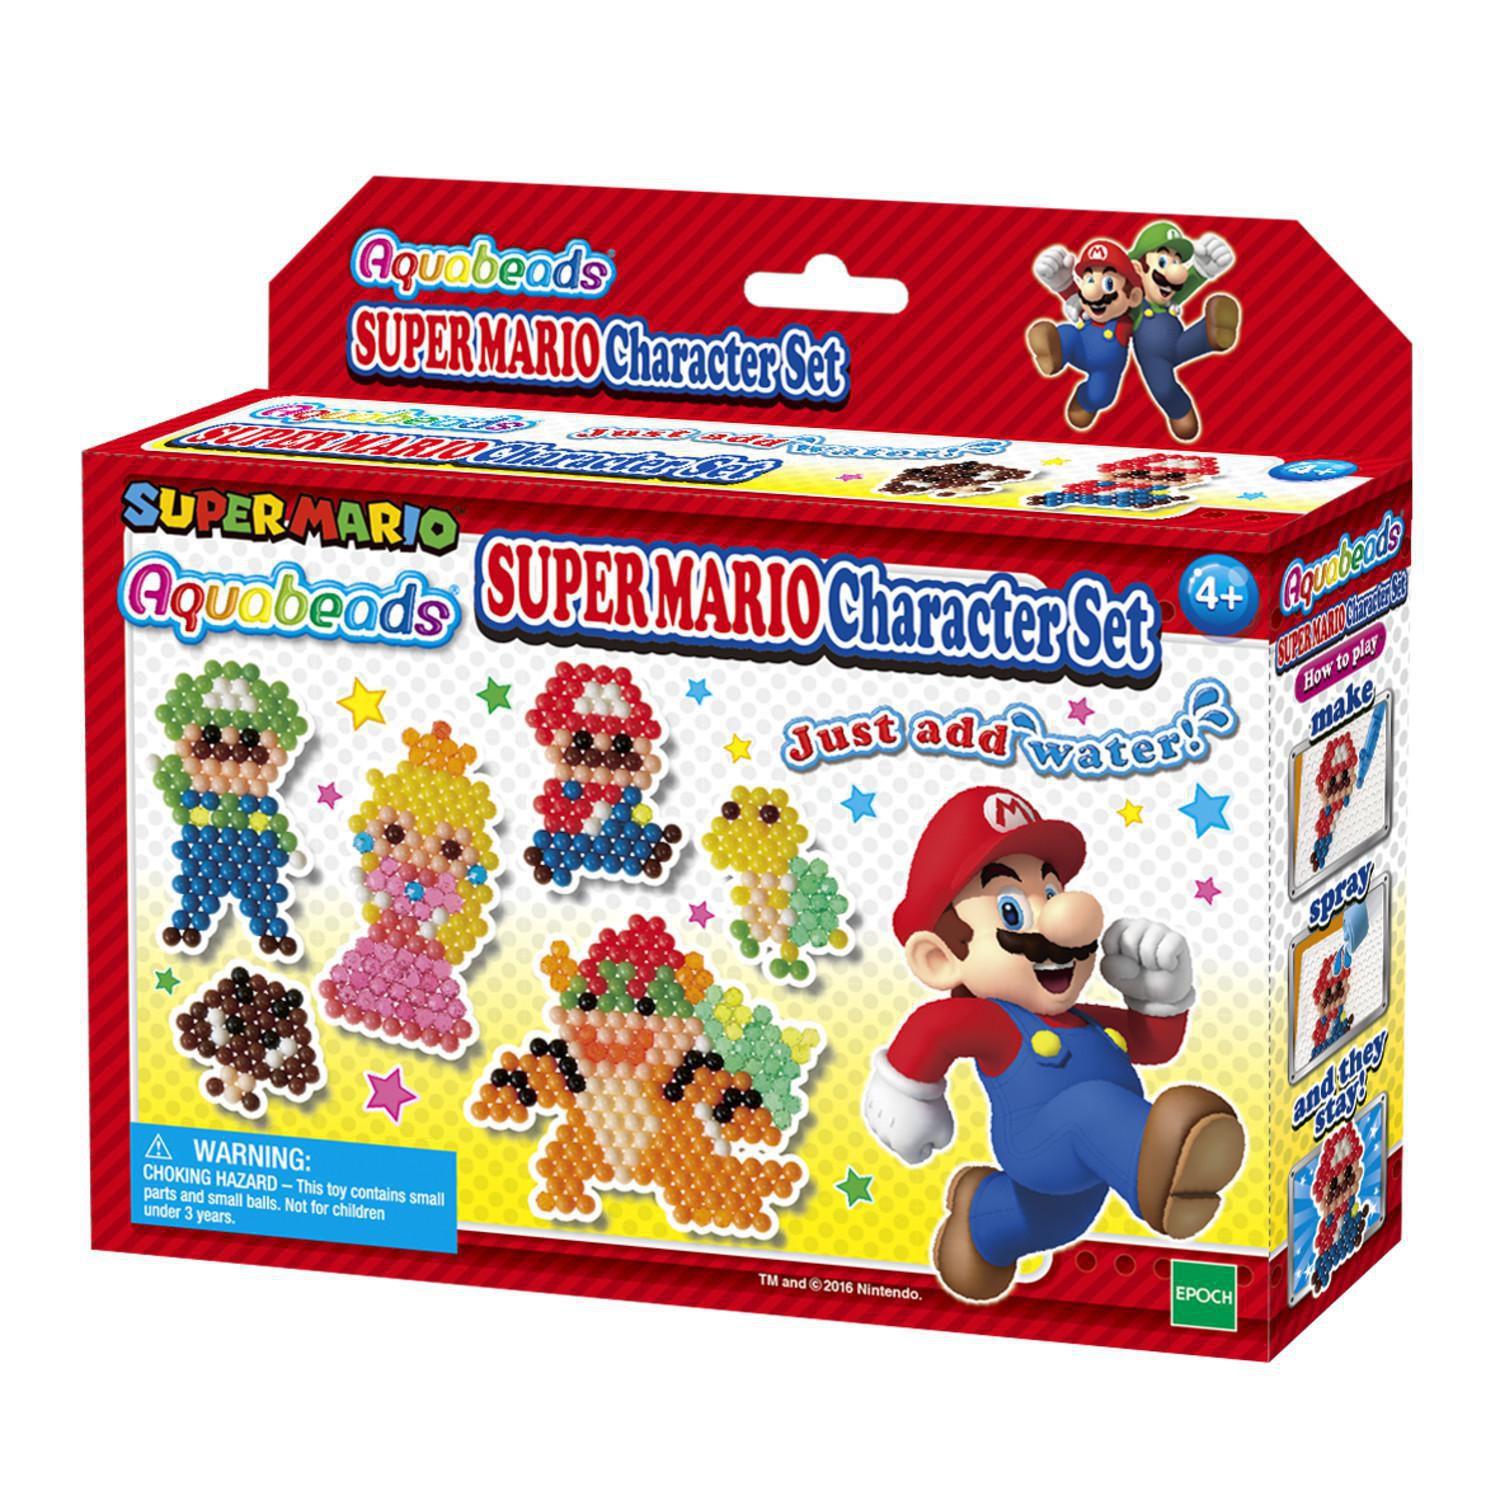  Aquabeads Super Mario Creation Cube - Complete Arts